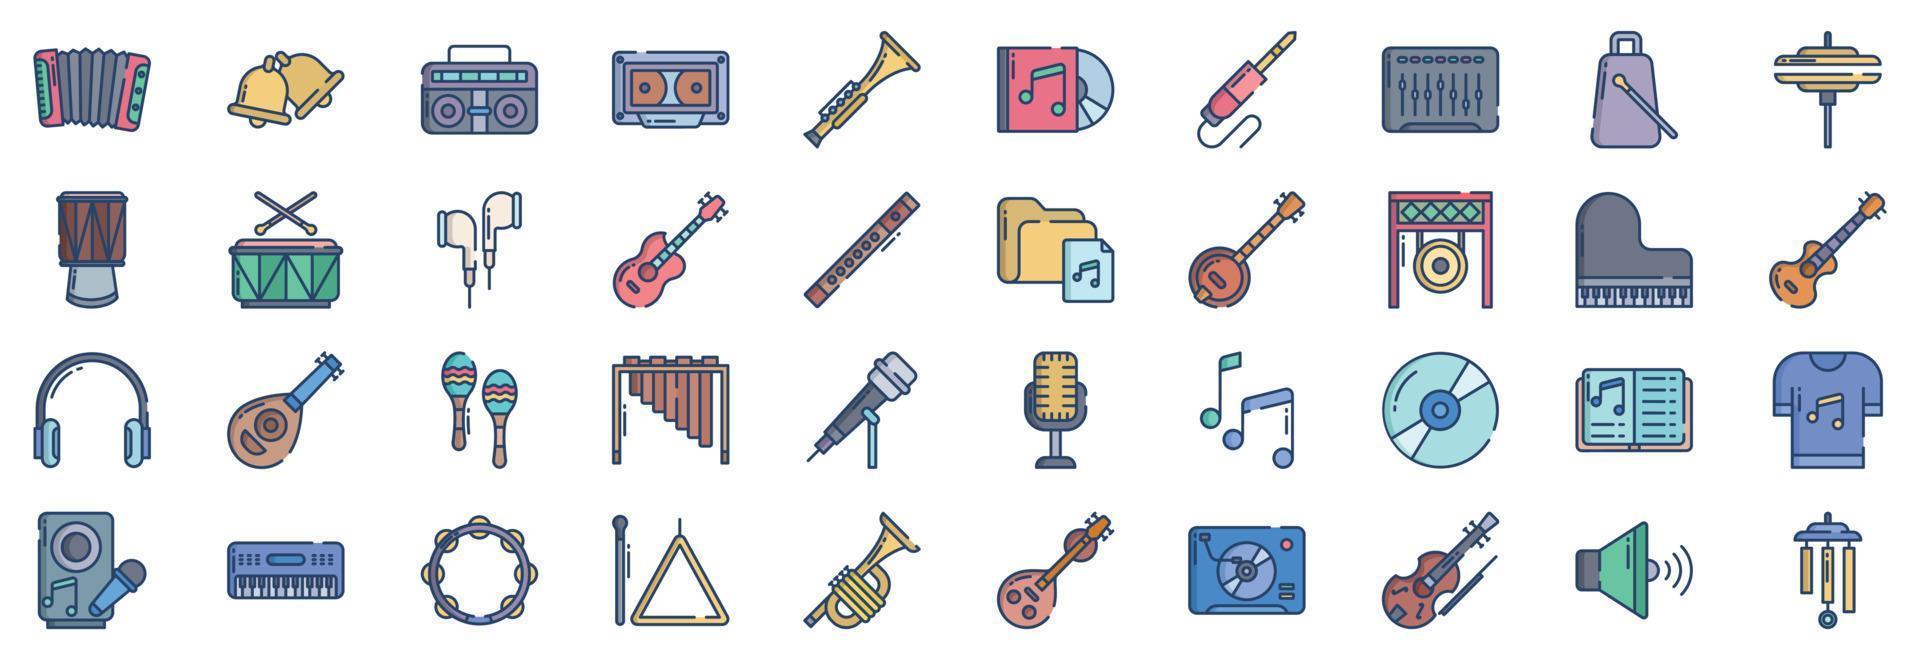 samling av ikoner relaterad till musik instrument, Inklusive ikoner tycka om dragspel, klocka, boombox, och Mer. vektor illustrationer, pixel perfekt uppsättning